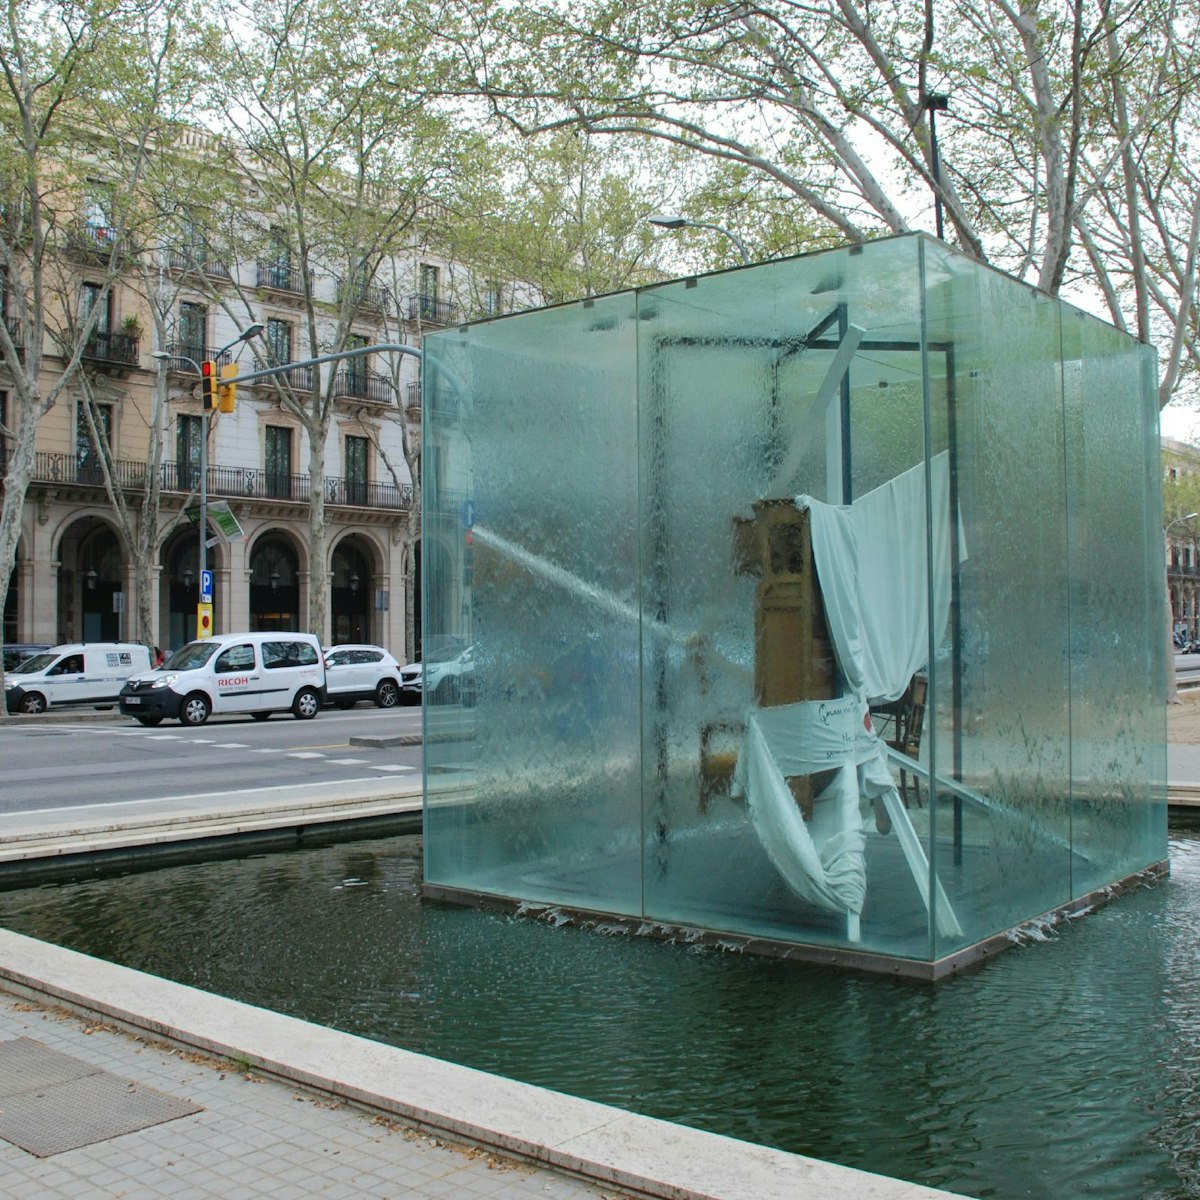 Homenatge a Picasso sculpture by Antoni Tàpies